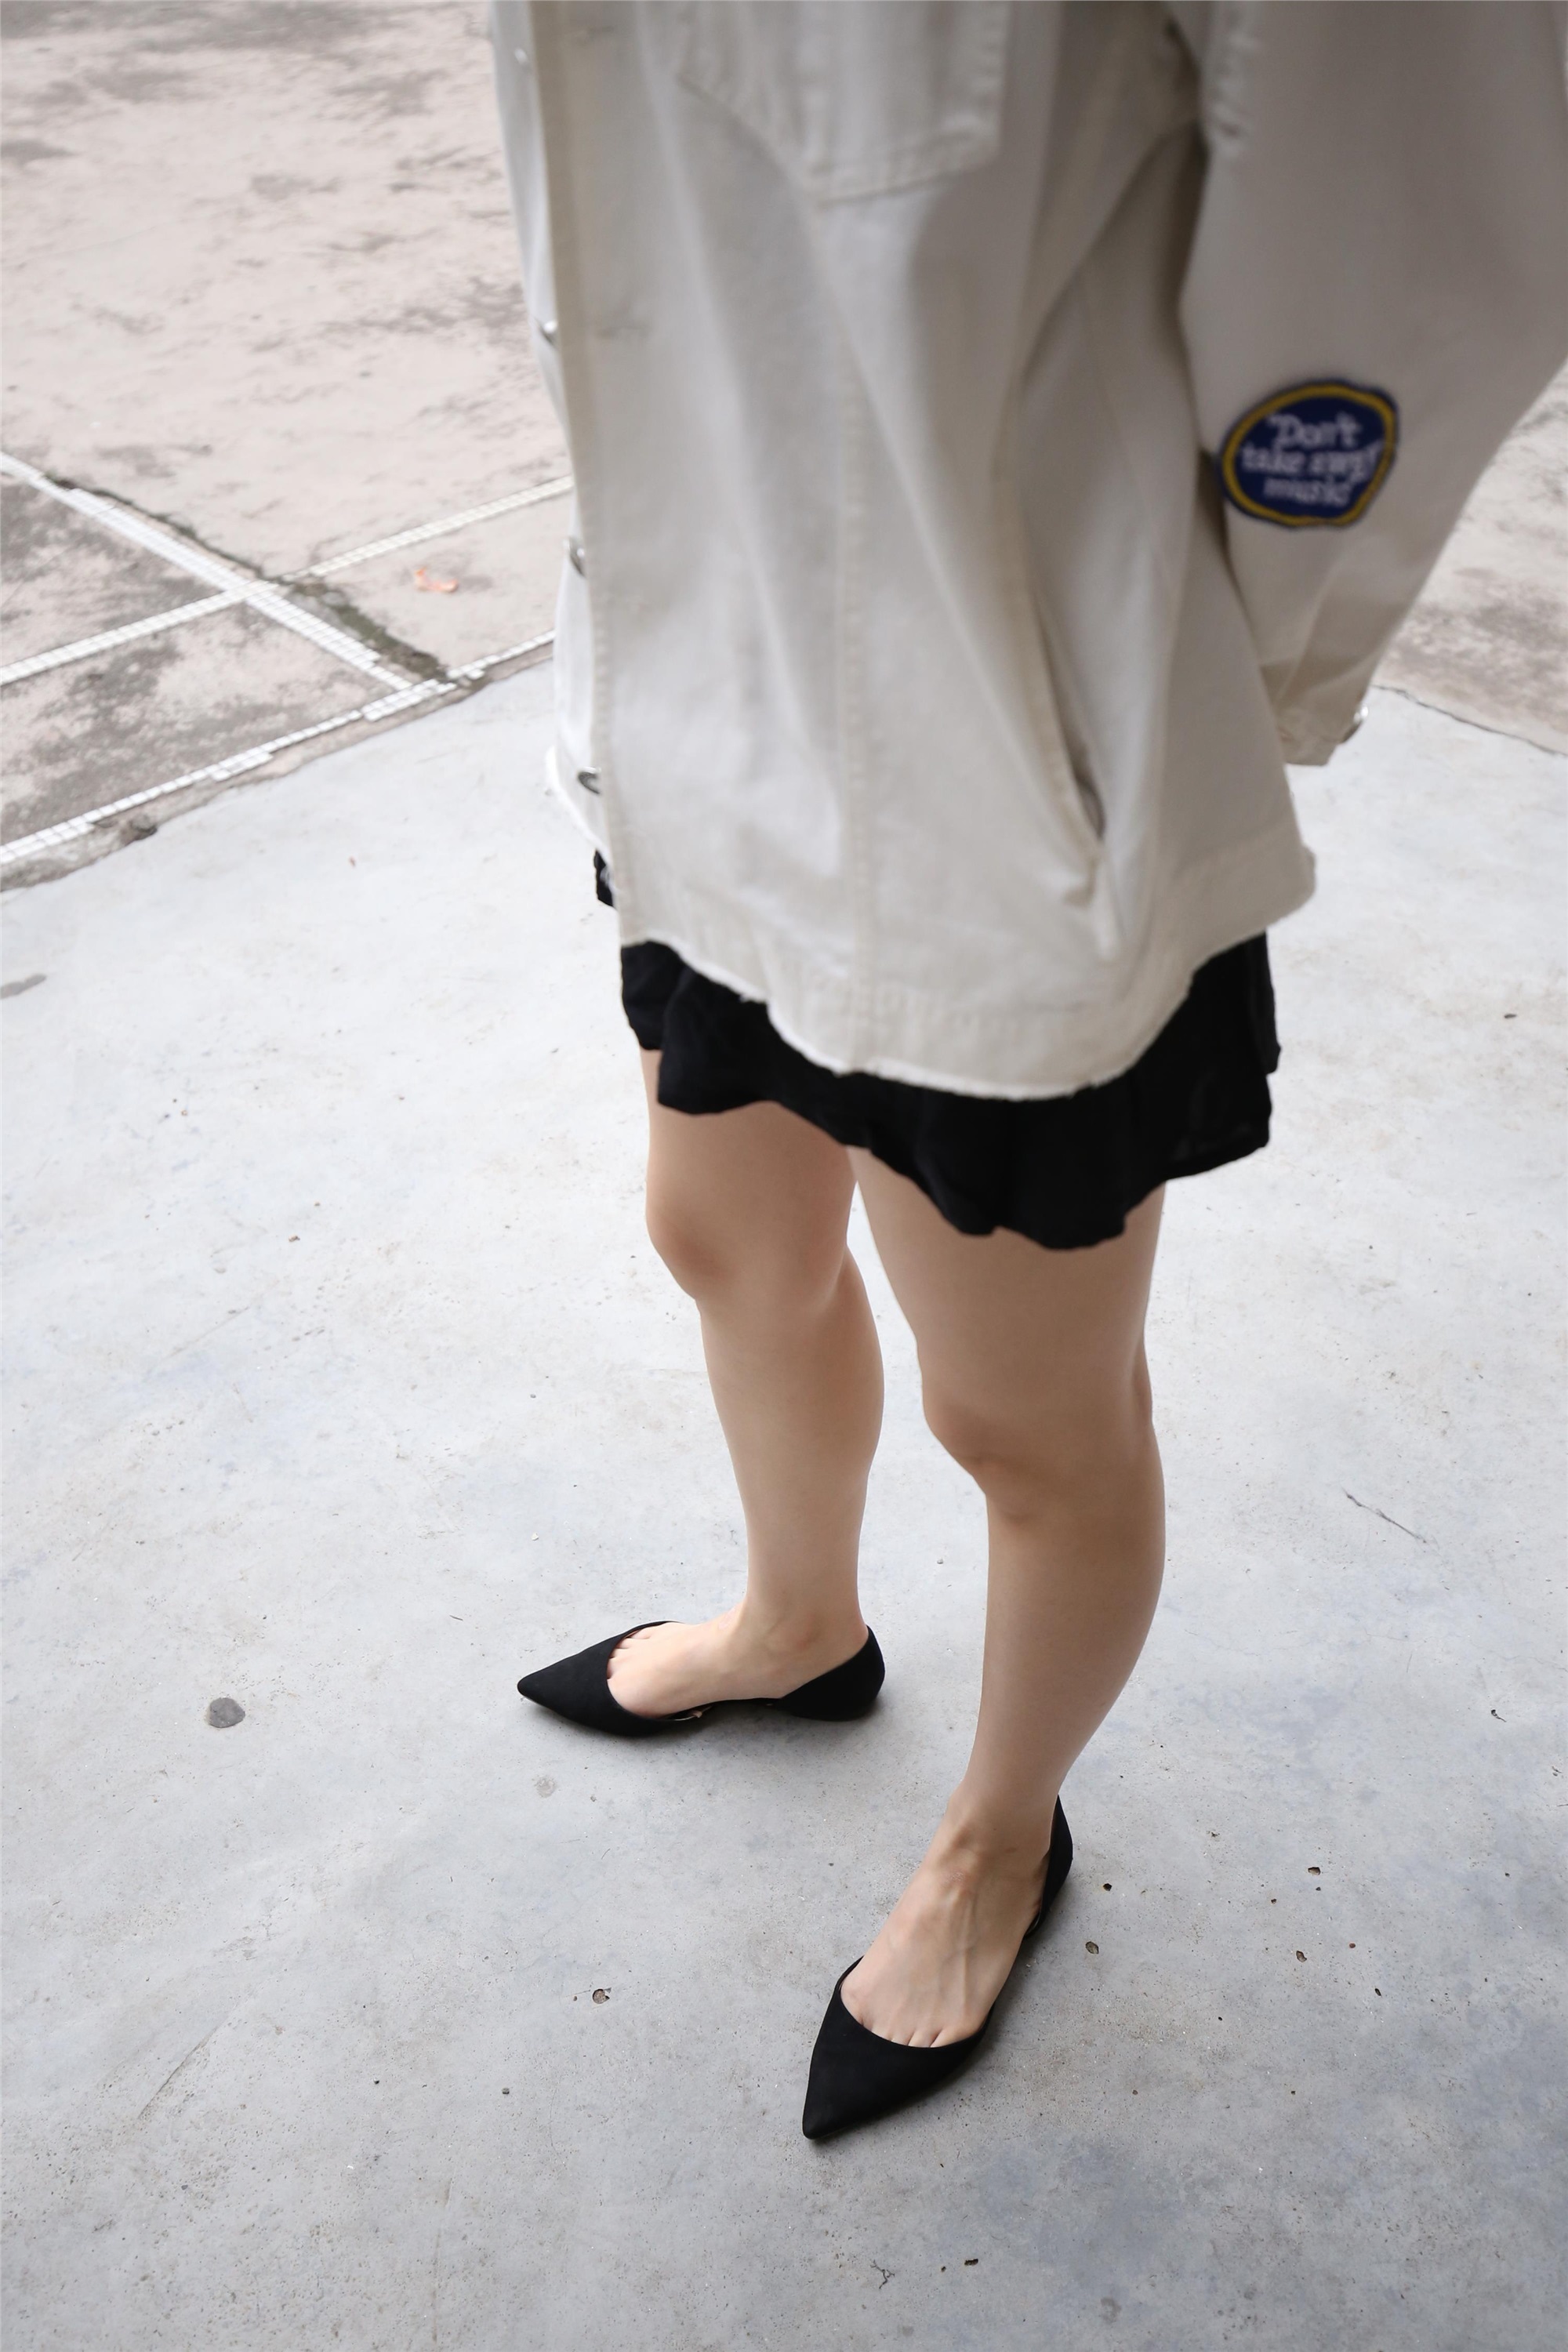 Z2-3 shirt barefoot 561p1